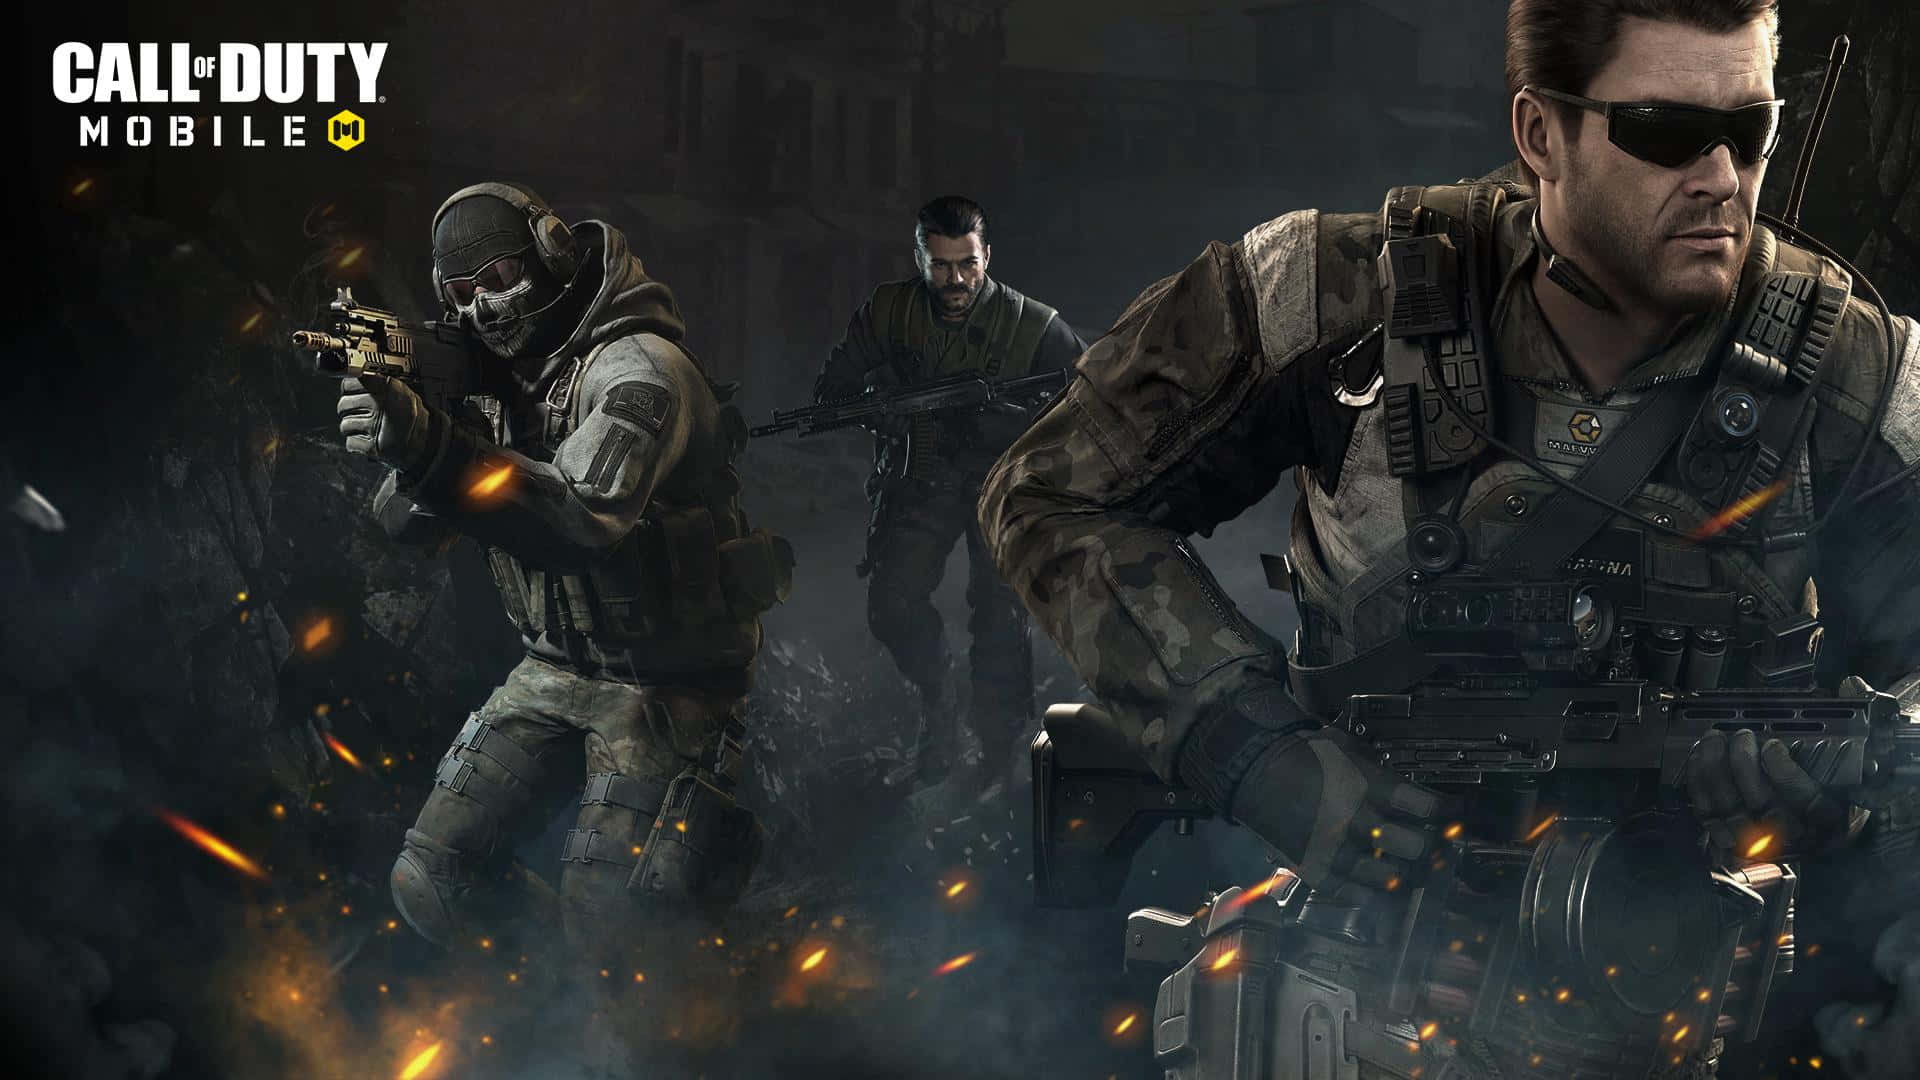 Alexmason, Personaje De Call Of Duty, En Una Escena Intensa De Campo De Batalla. Fondo de pantalla